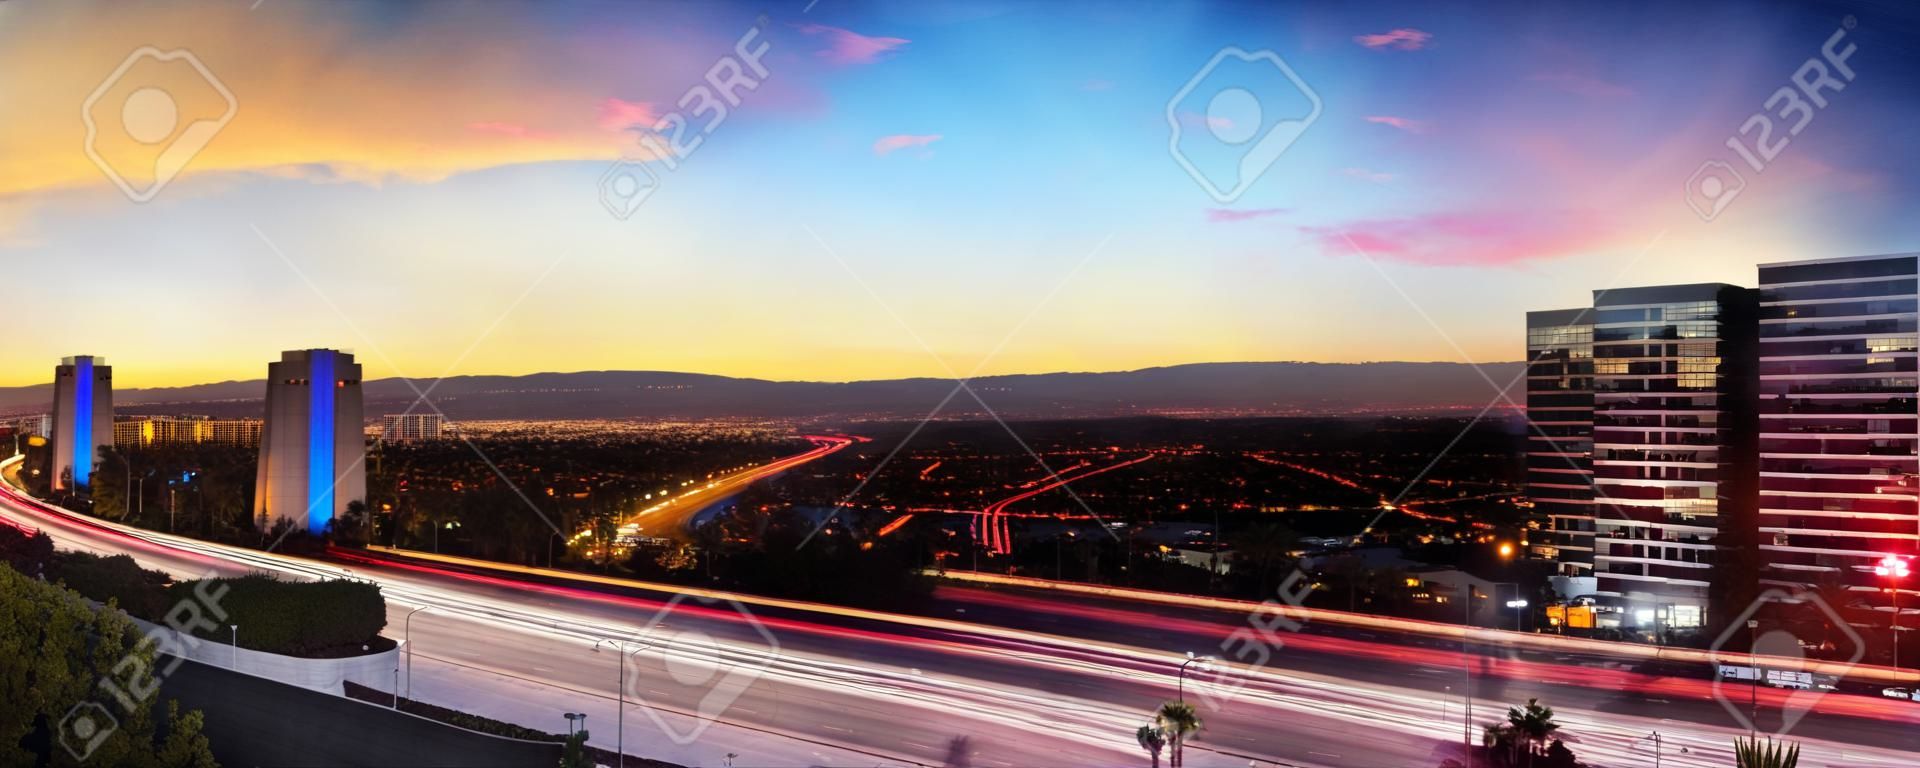 Wschód słońca nad autostradą w Irvine w Kalifornii, gdy ślady reflektorów poruszają się po drogach.